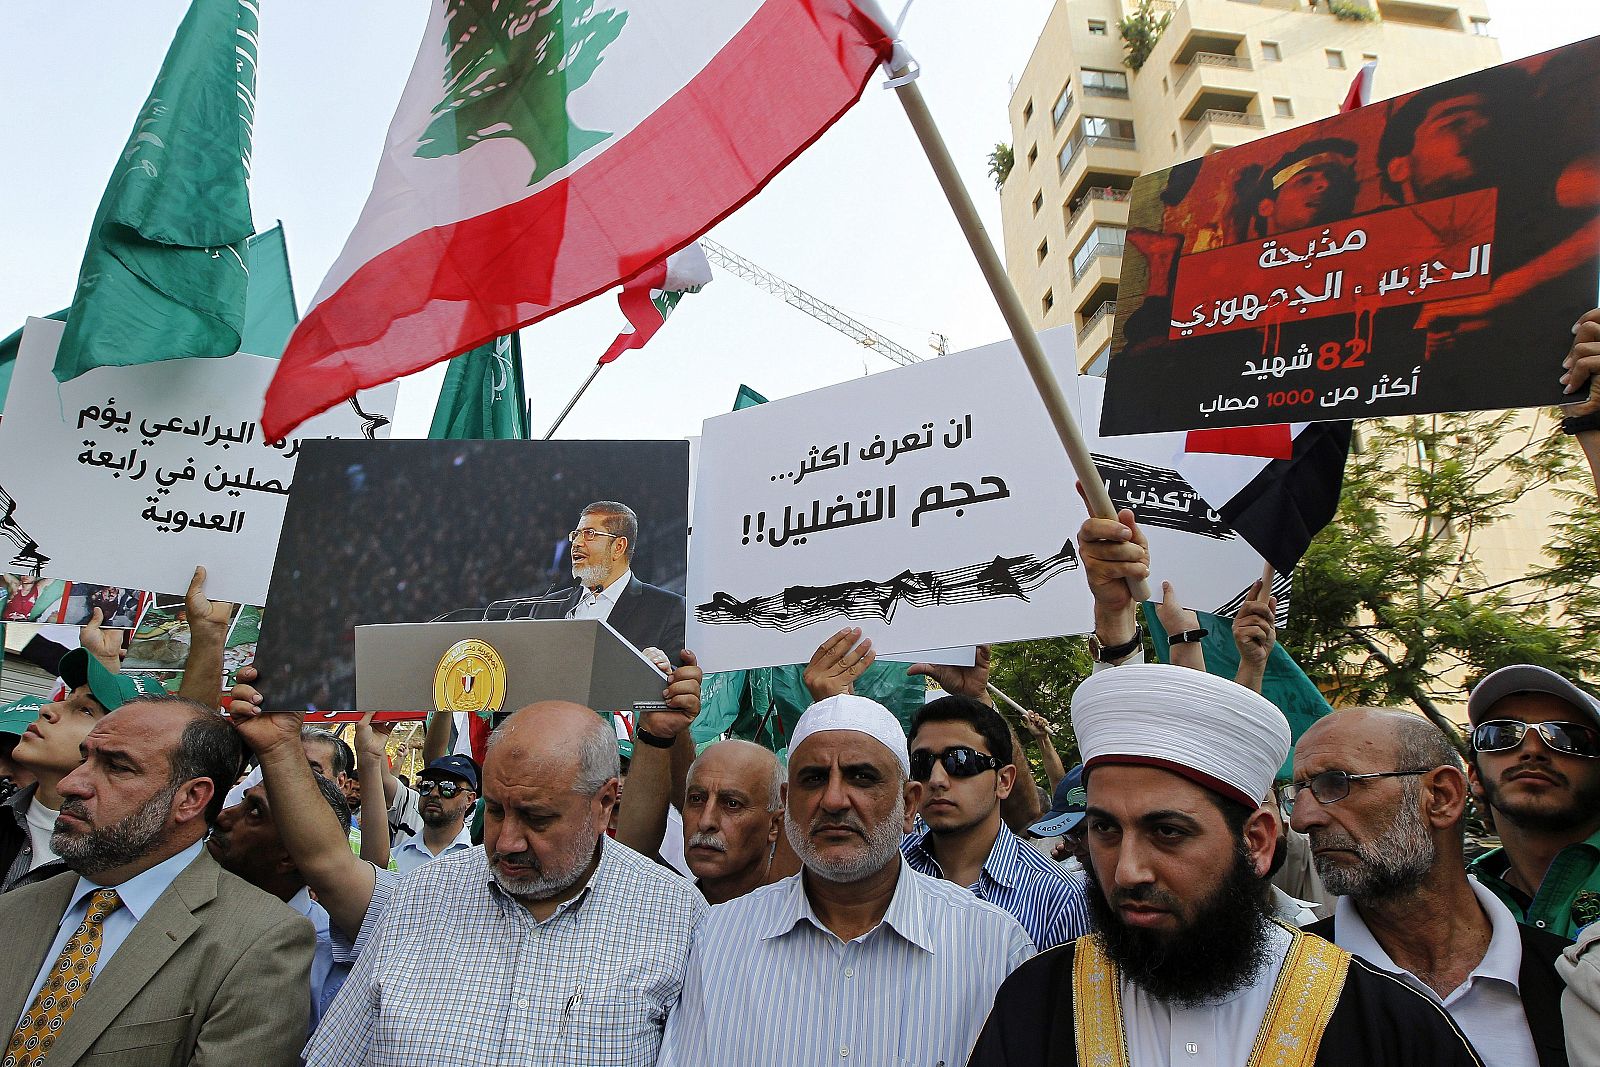 Miembros del Grupo islámico libanés (emparentados con lo egipcios Hermanos Musulmanes) durante una manifestación frente a la embajada egipcia en Beirut, Líbano, para mostrar su apoyo al depuesto presidente Mohamed Mursi.